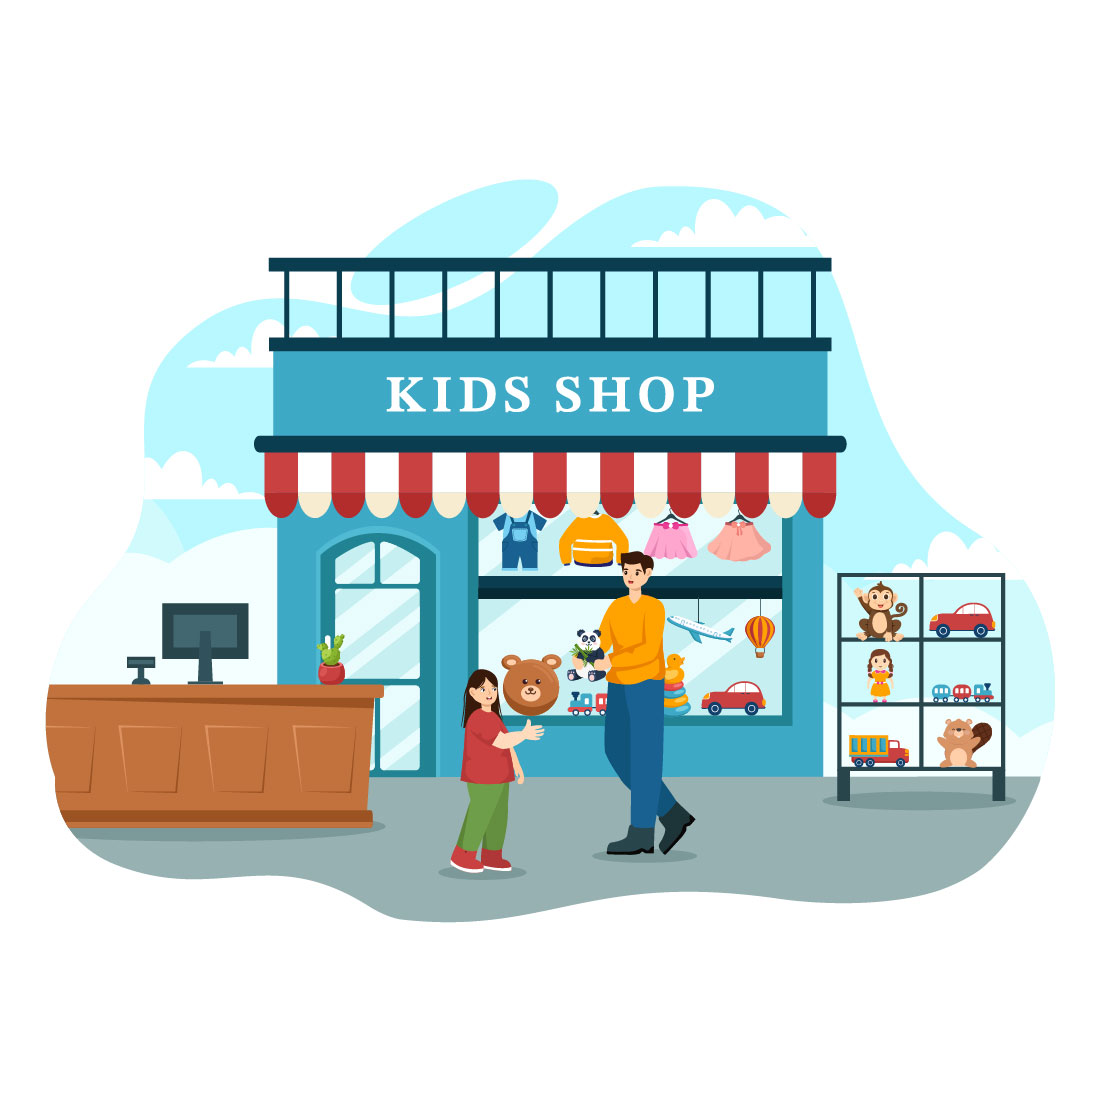 12 Kids Shop Illustration preview image.